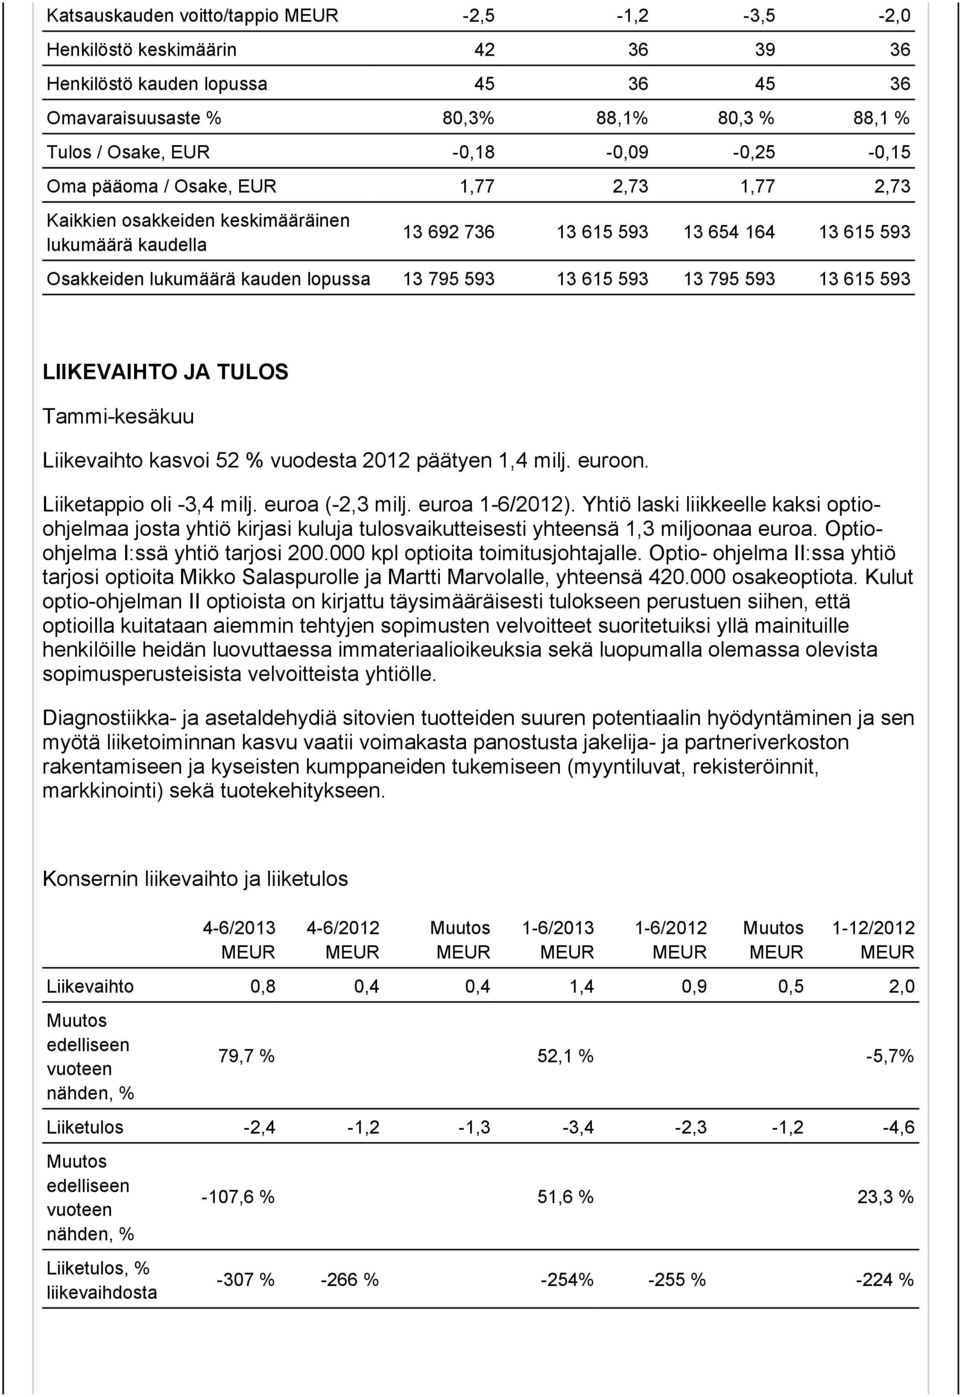 13 795 593 13 615 593 13 795 593 13 615 593 LIIKEVAIHTO JA TULOS Tammi-kesäkuu Liikevaihto kasvoi 52 % vuodesta 2012 päätyen 1,4 milj. euroon. Liiketappio oli -3,4 milj. euroa (-2,3 milj.